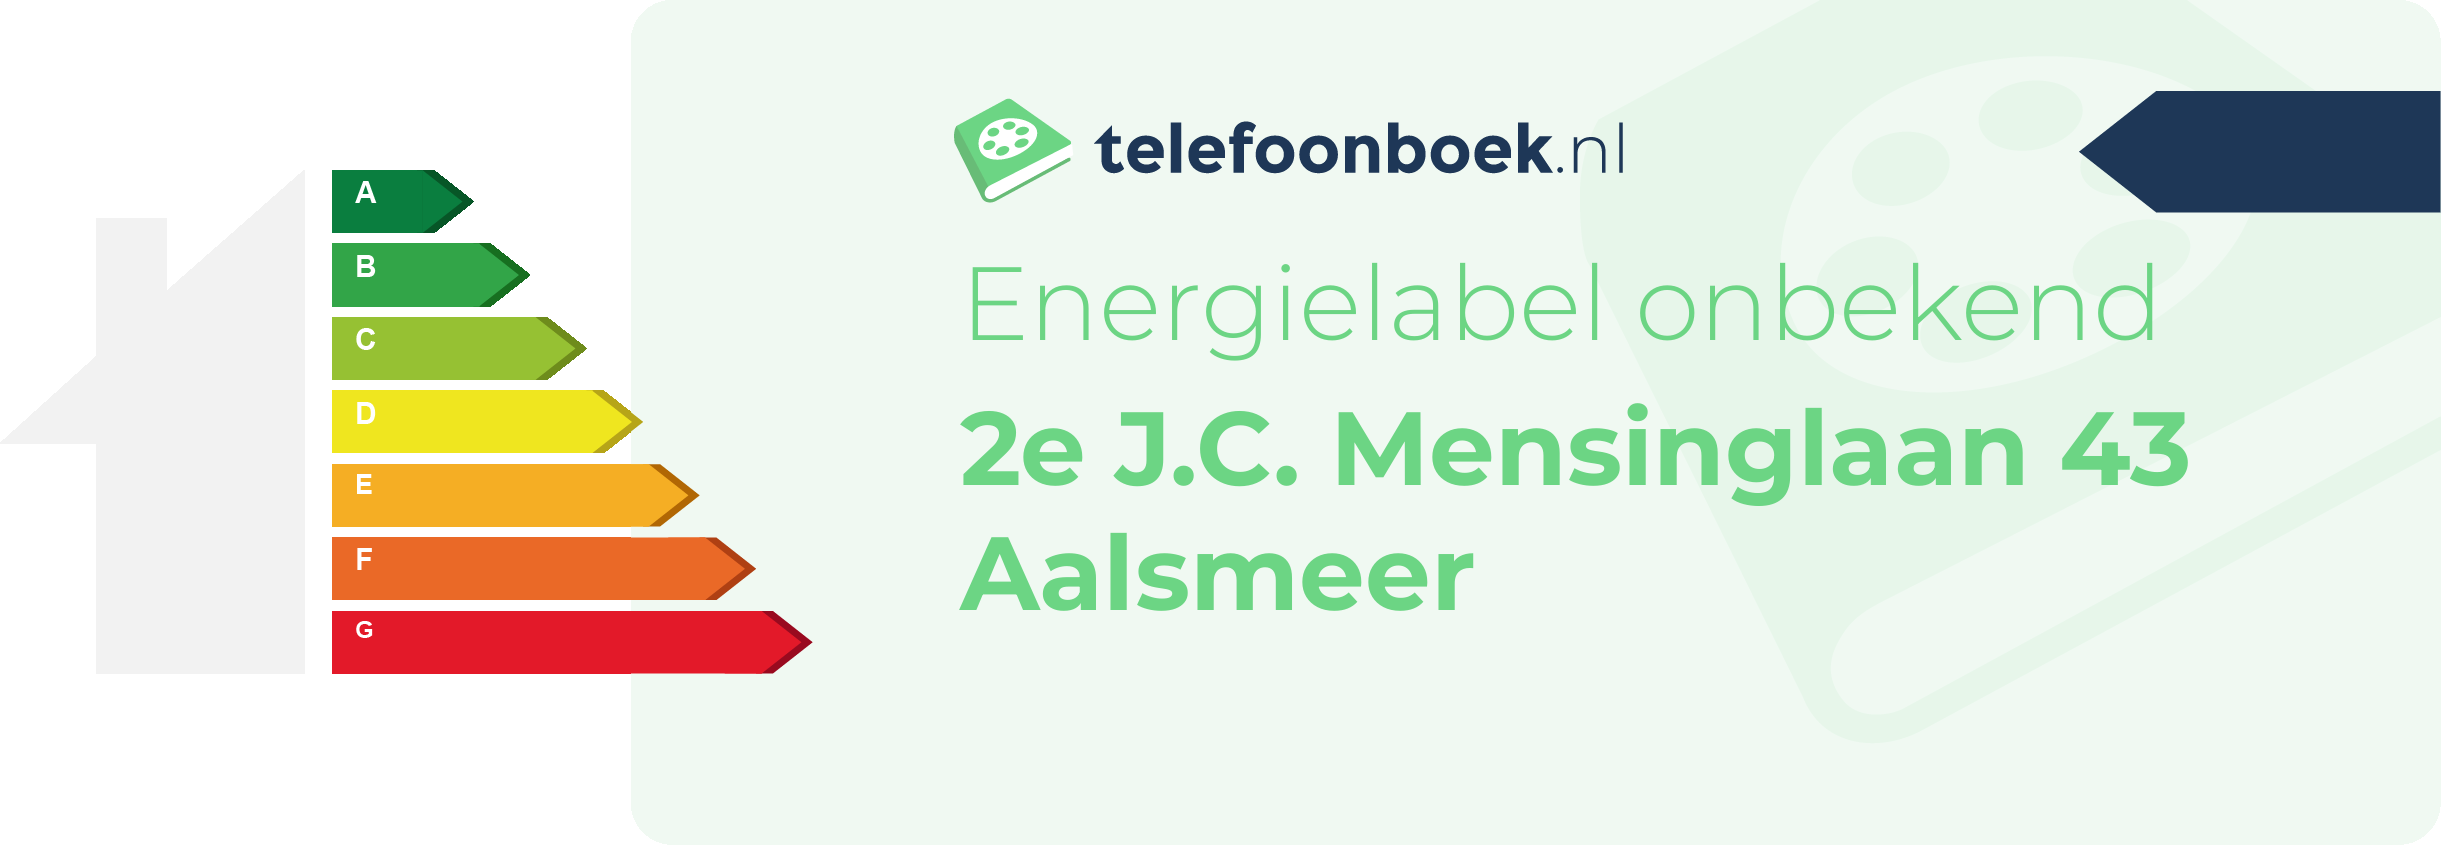 Energielabel 2e J.C. Mensinglaan 43 Aalsmeer